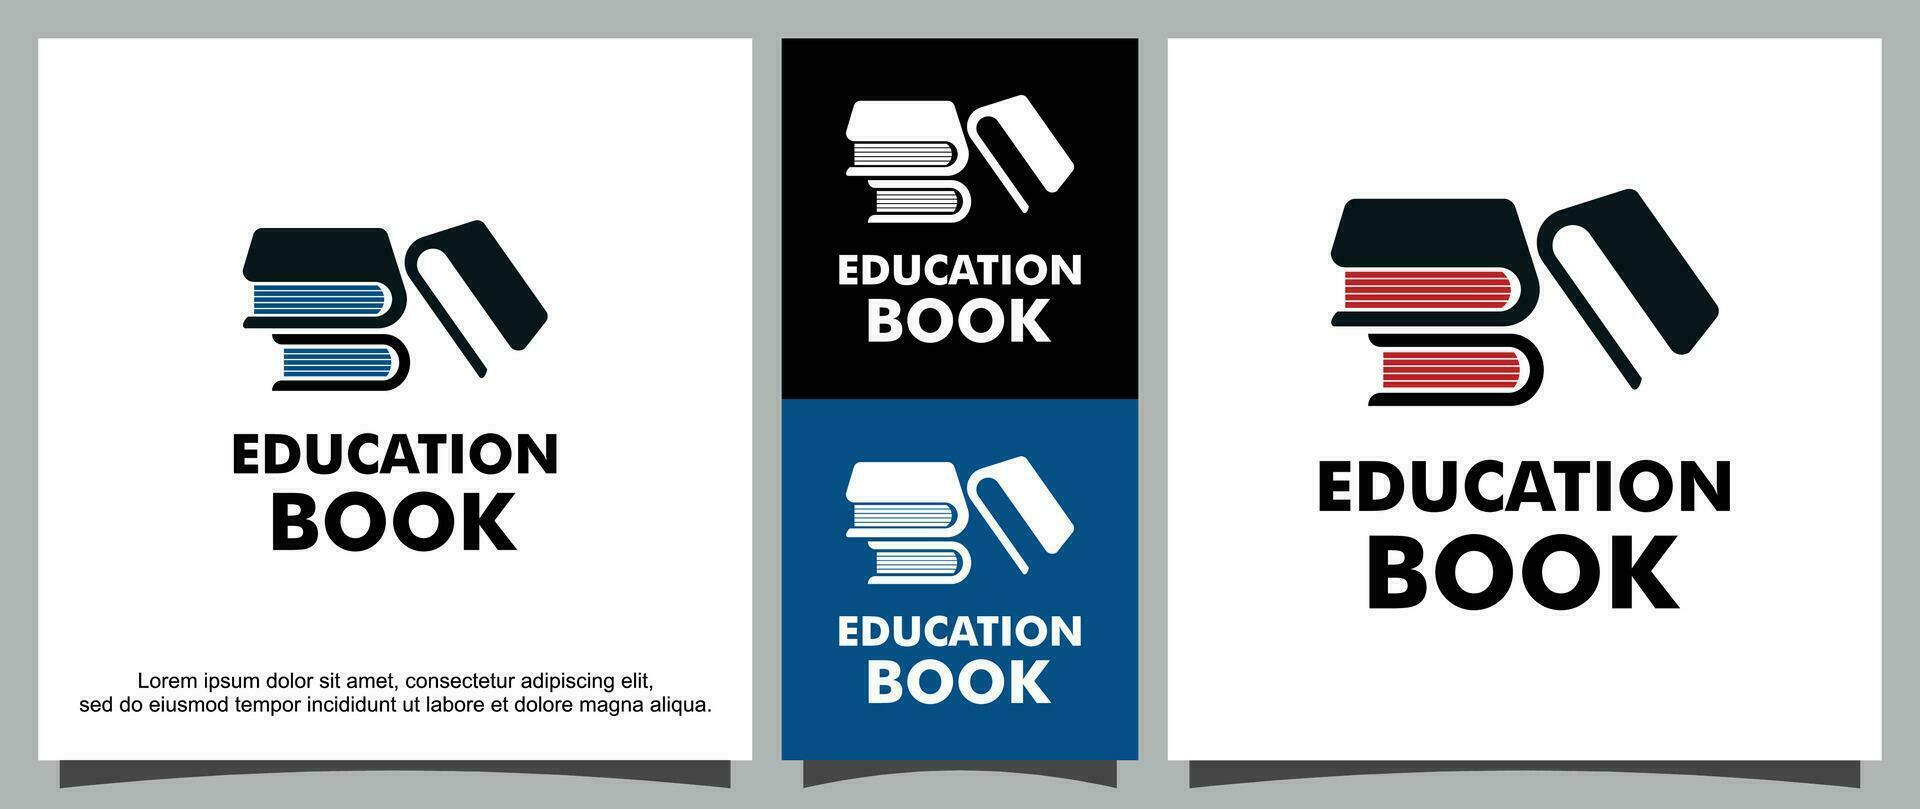 libros para educación logo modelo vector